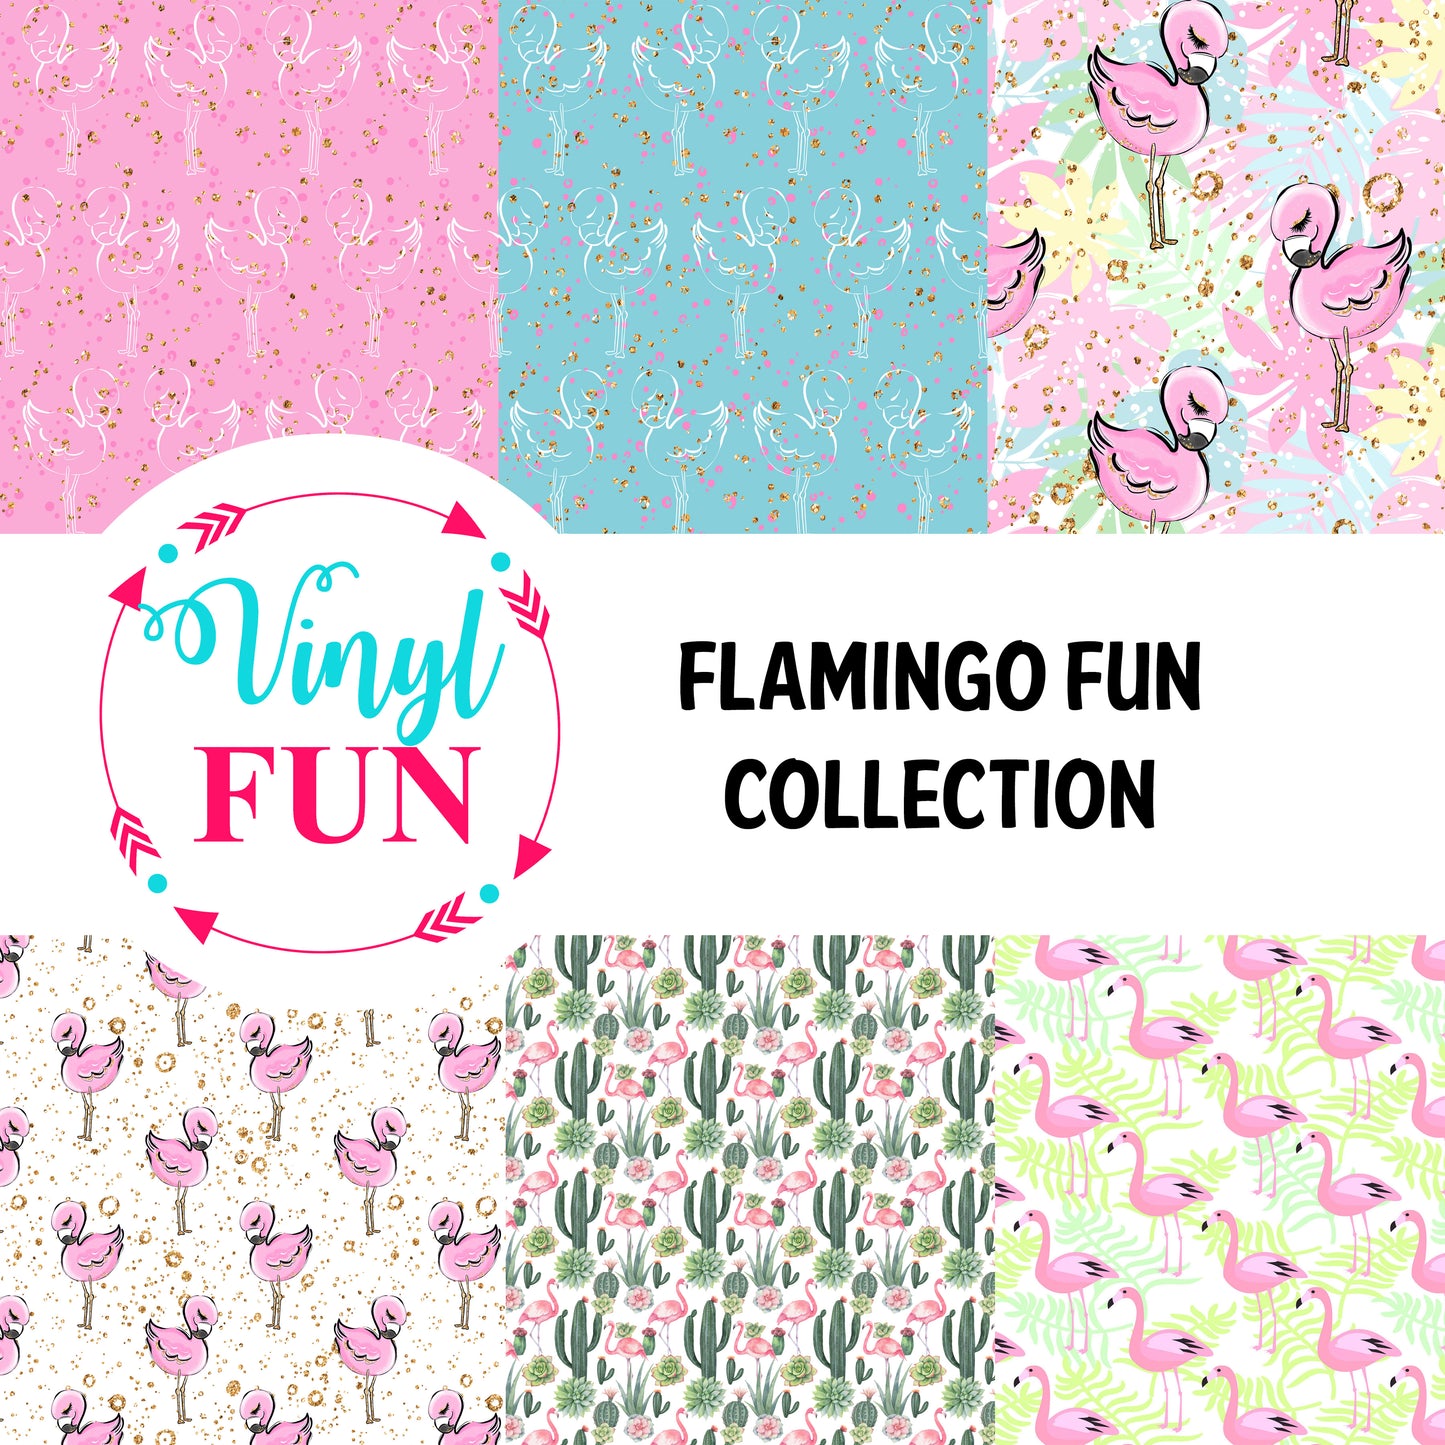 Flamingo Fun Collection